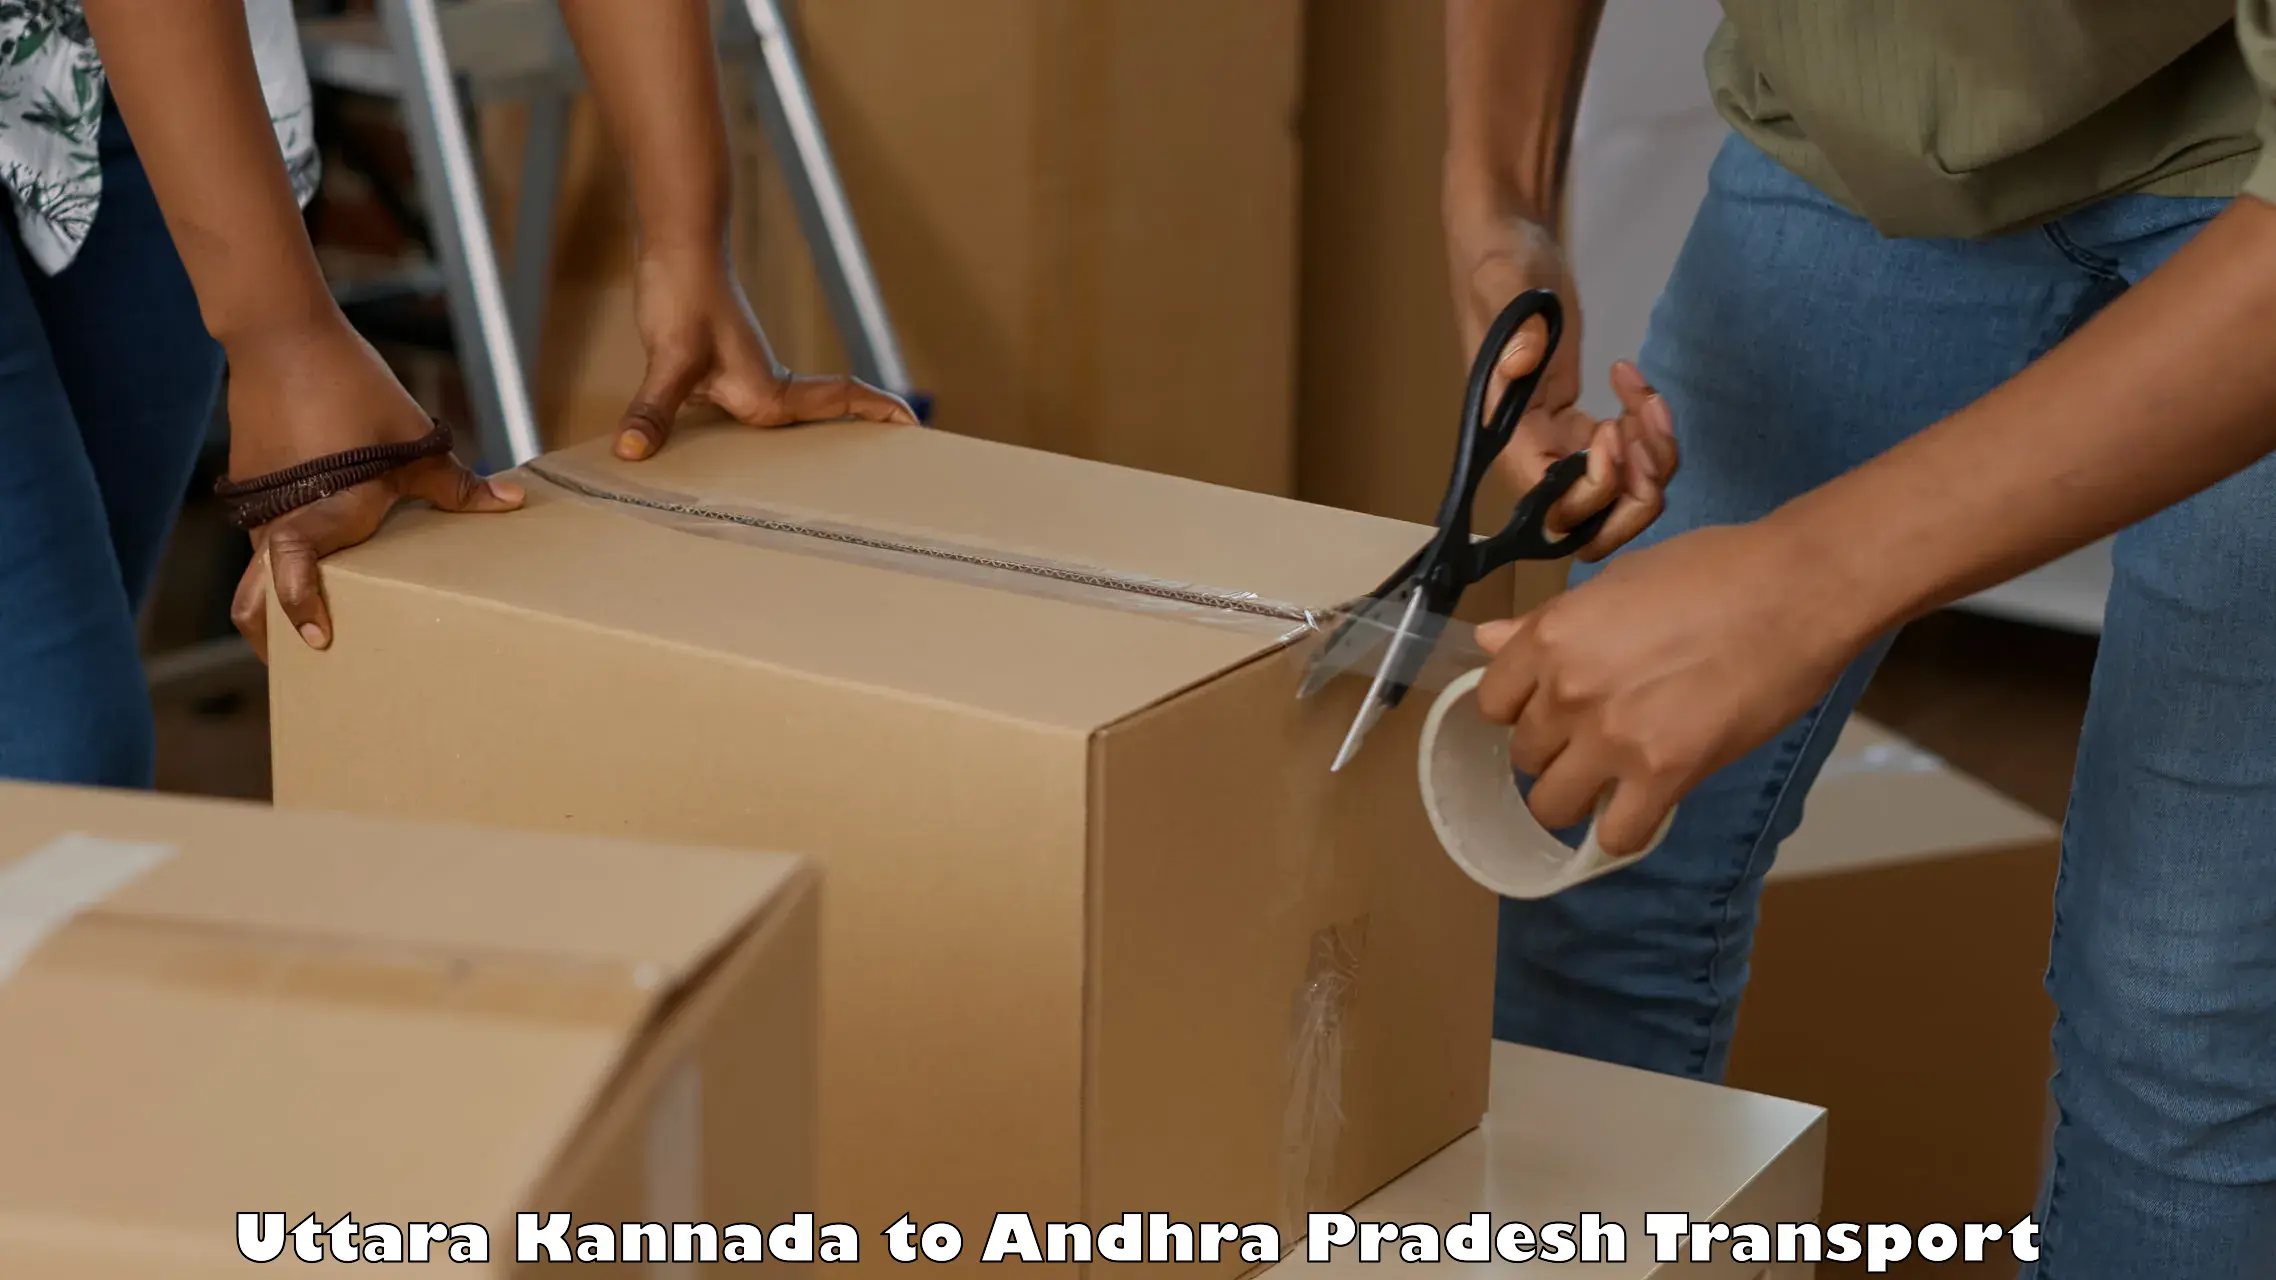 Bike shipping service Uttara Kannada to Gudivada